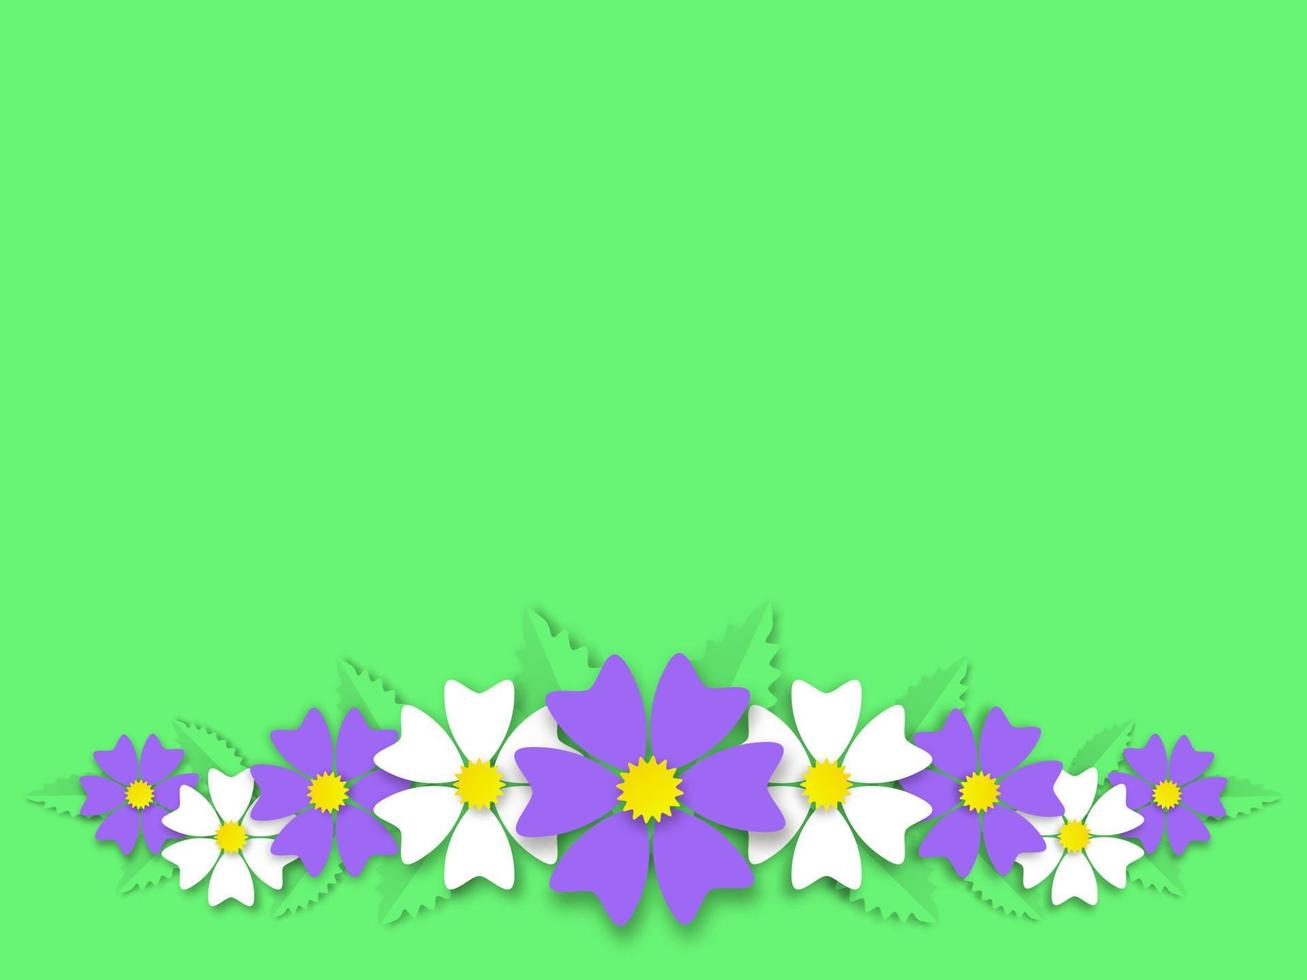 ornamento di ghirlanda estiva da banner di fiori. intrecciare margherite bianche selvatiche e ranuncoli viola incorniciati con foglie vettoriali verdi